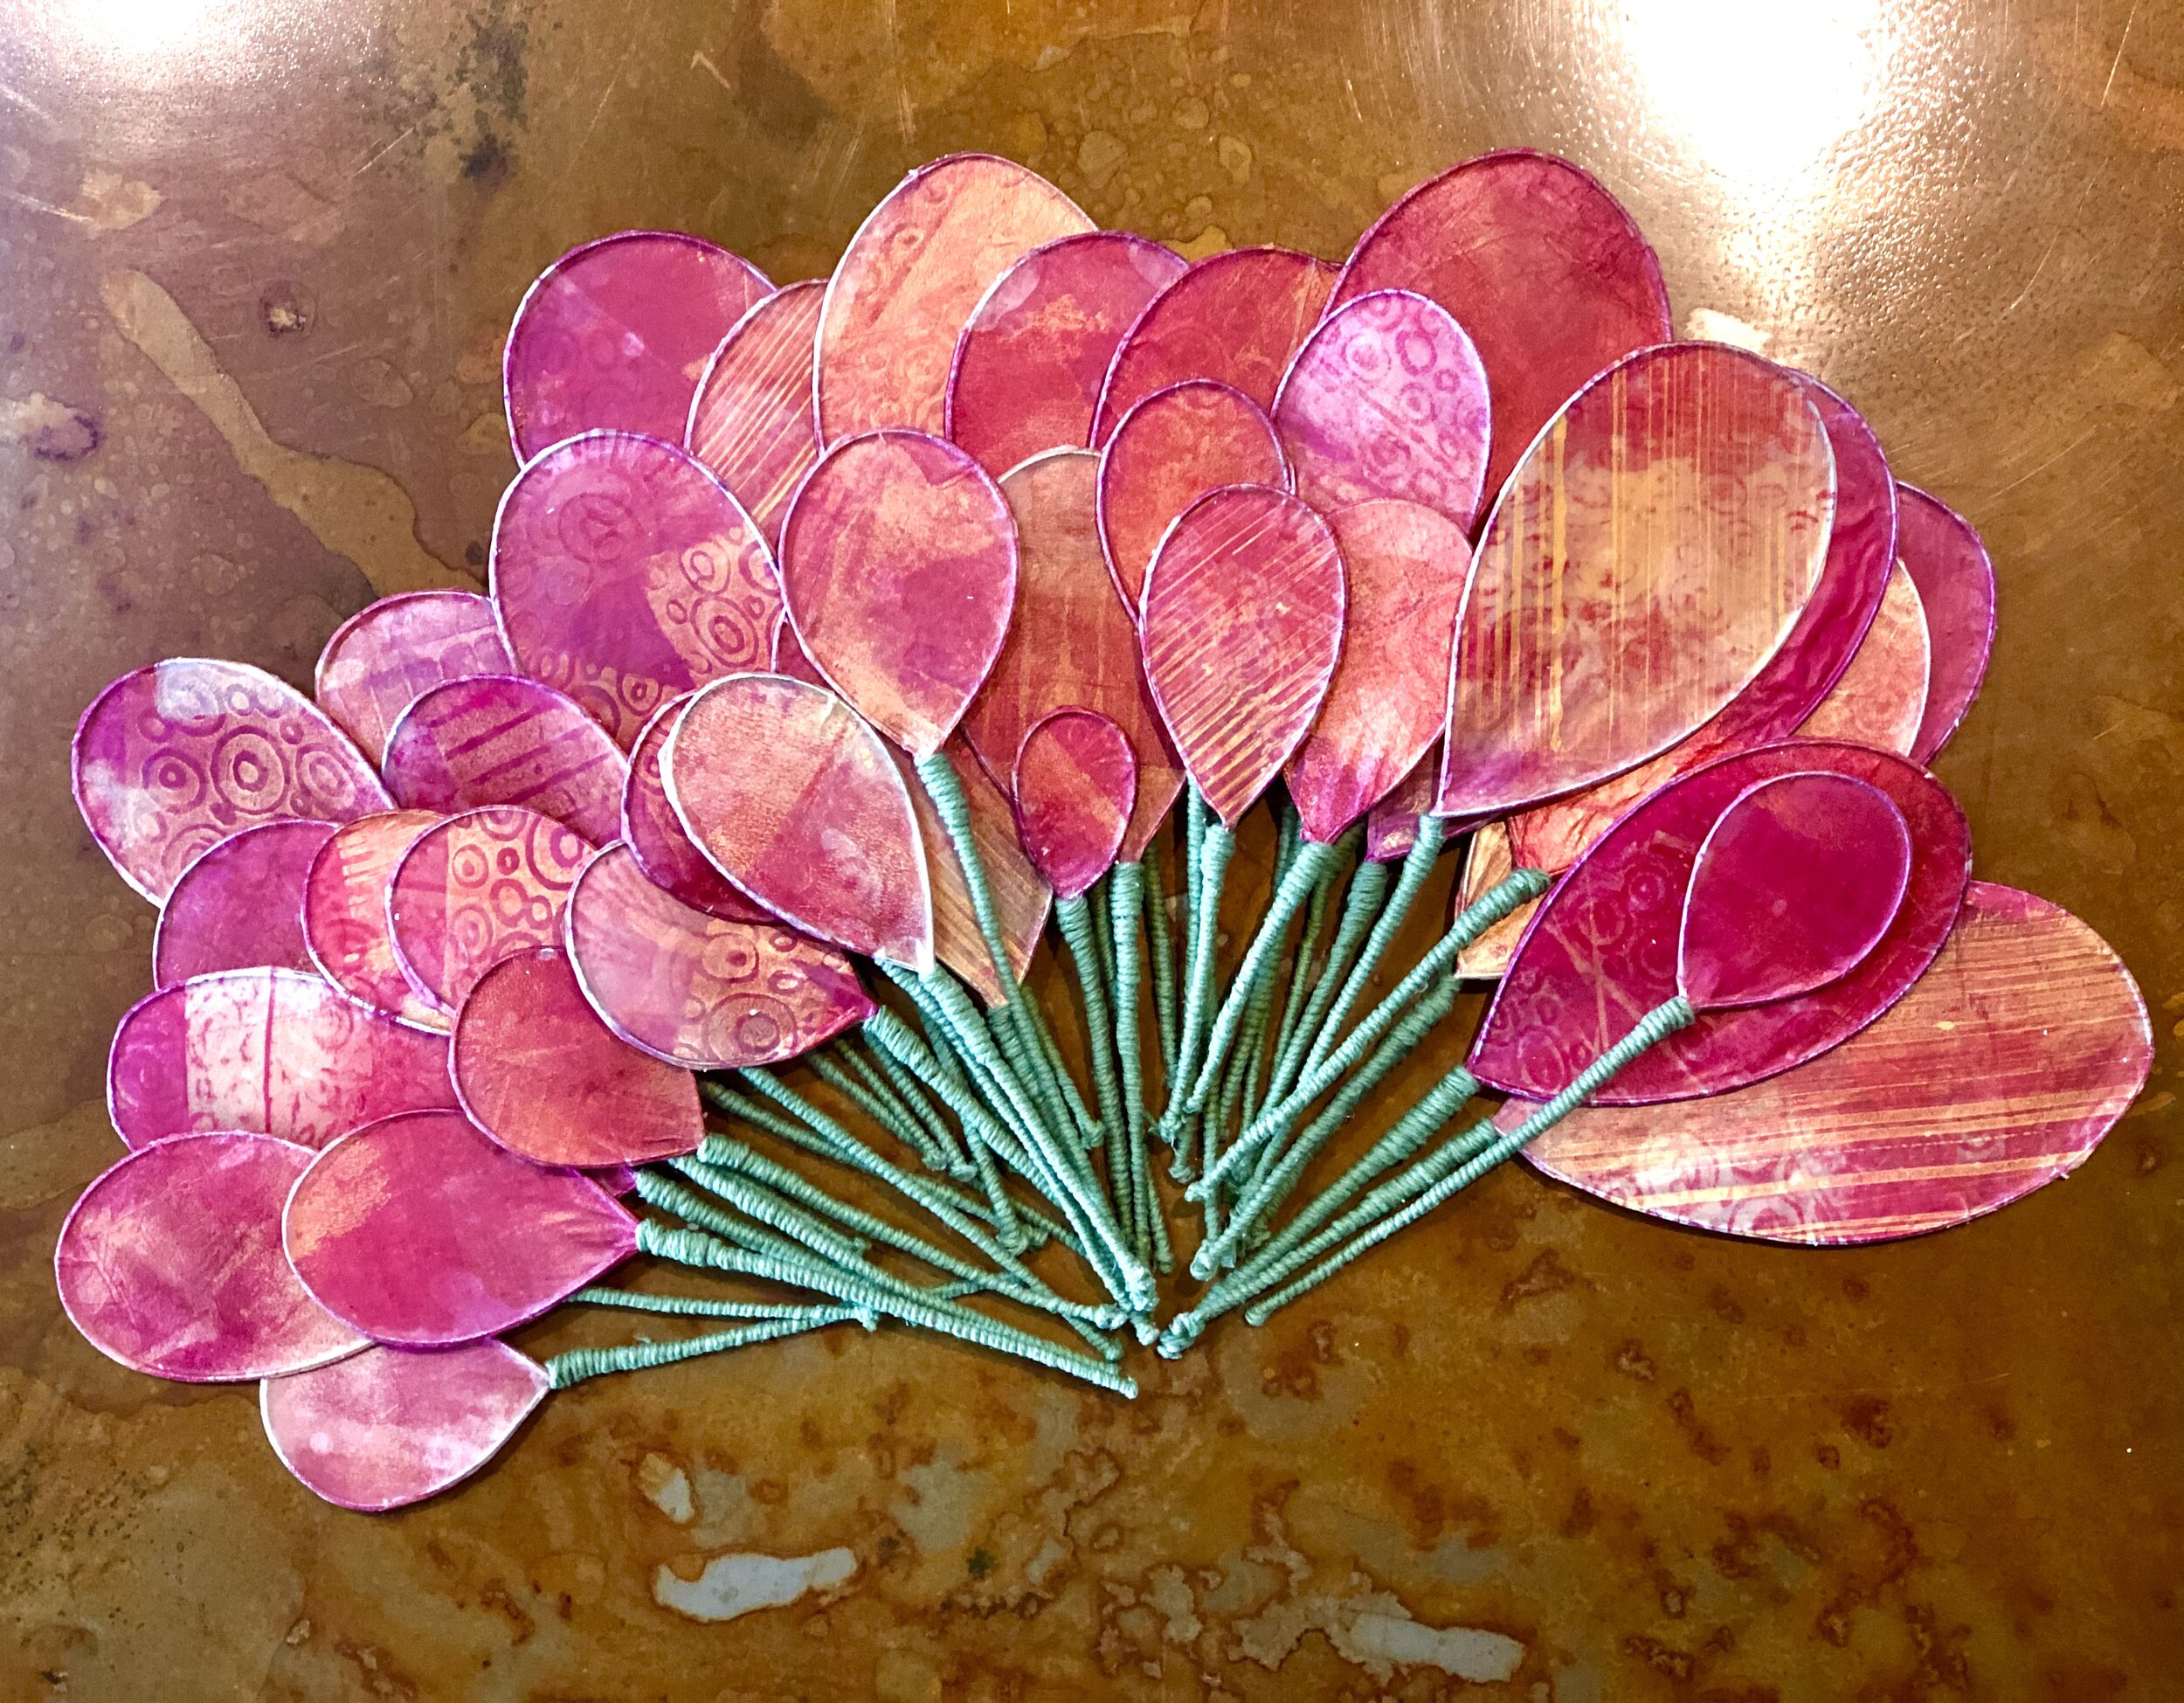 Flower Petals - gelli plate block printing on paper.jpg